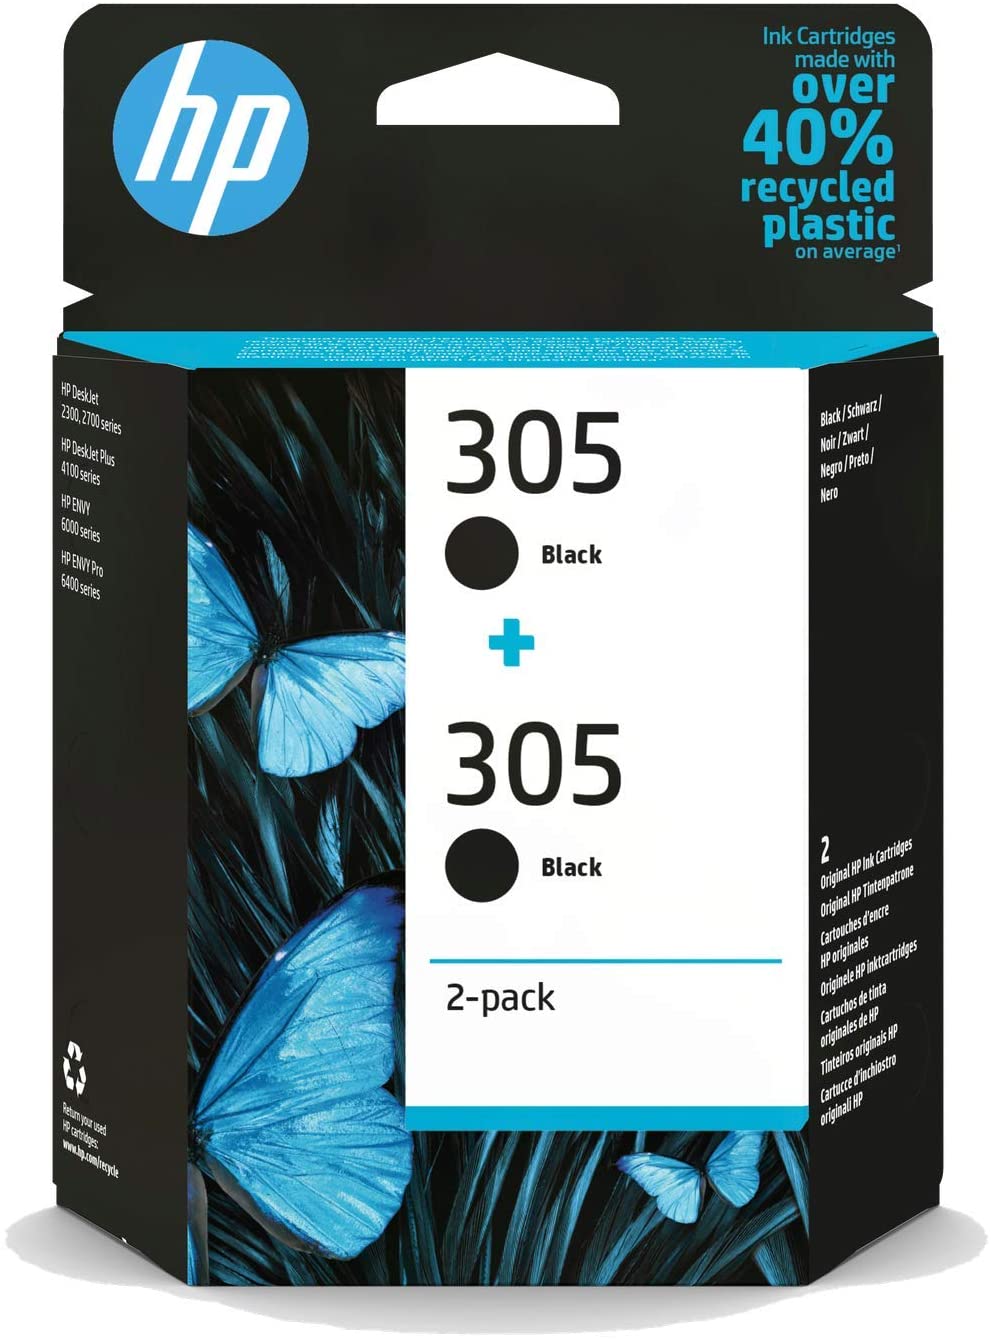 HP 305 Ink Cartridge Black & Colour Refill Kit For HP DeskJet Plus